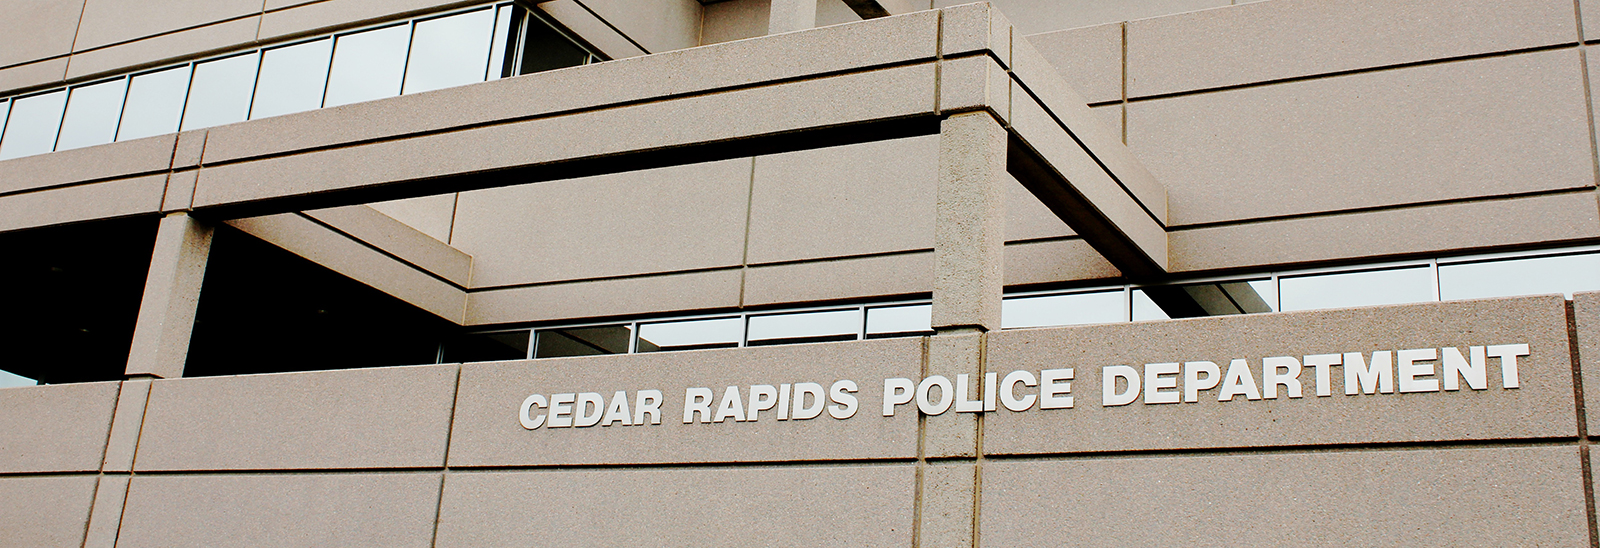 Cedar Rapids Police Station